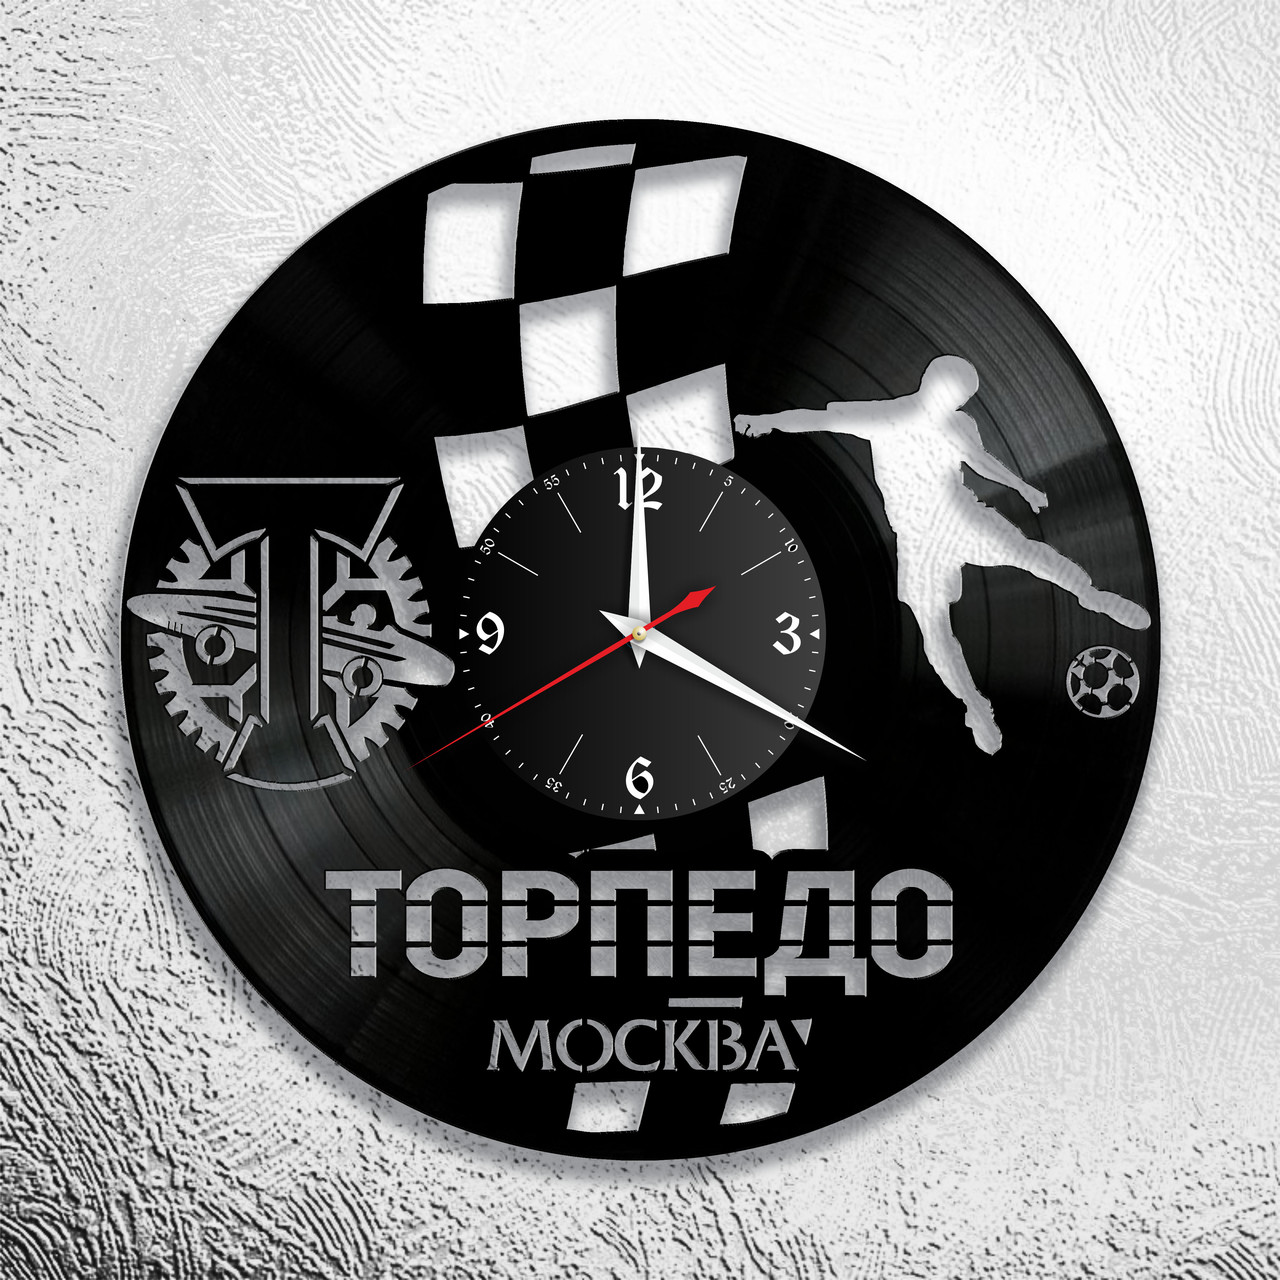 Оригинальные часы из виниловых пластинок  "Торпедо" версия 1, фото 1